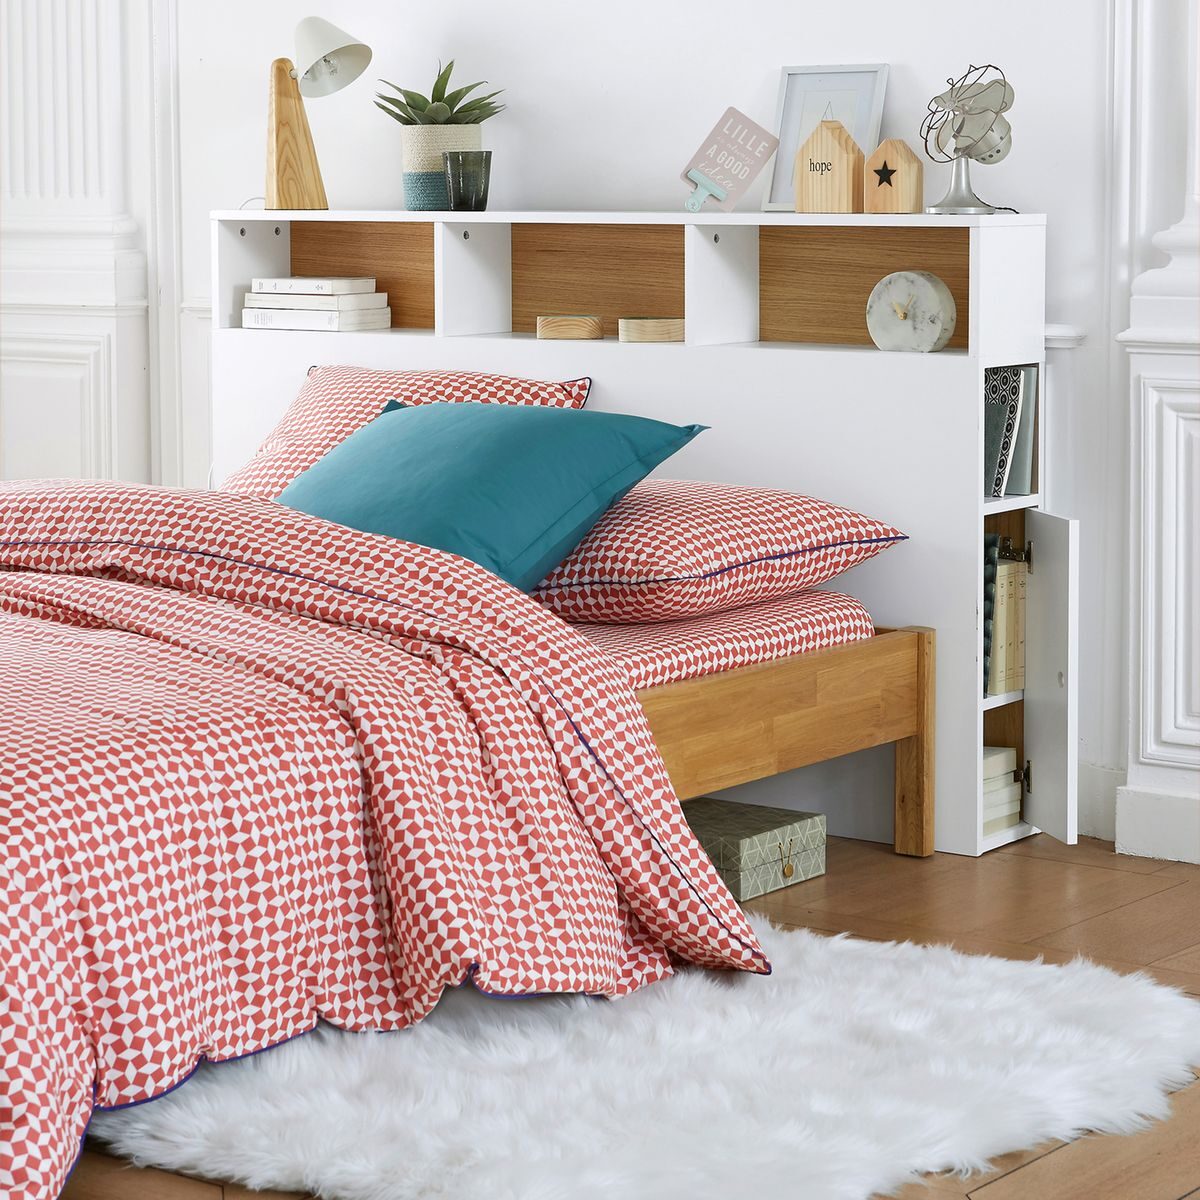 optimiser le rangement tête de lit avec rangement blanc scandinave bois design